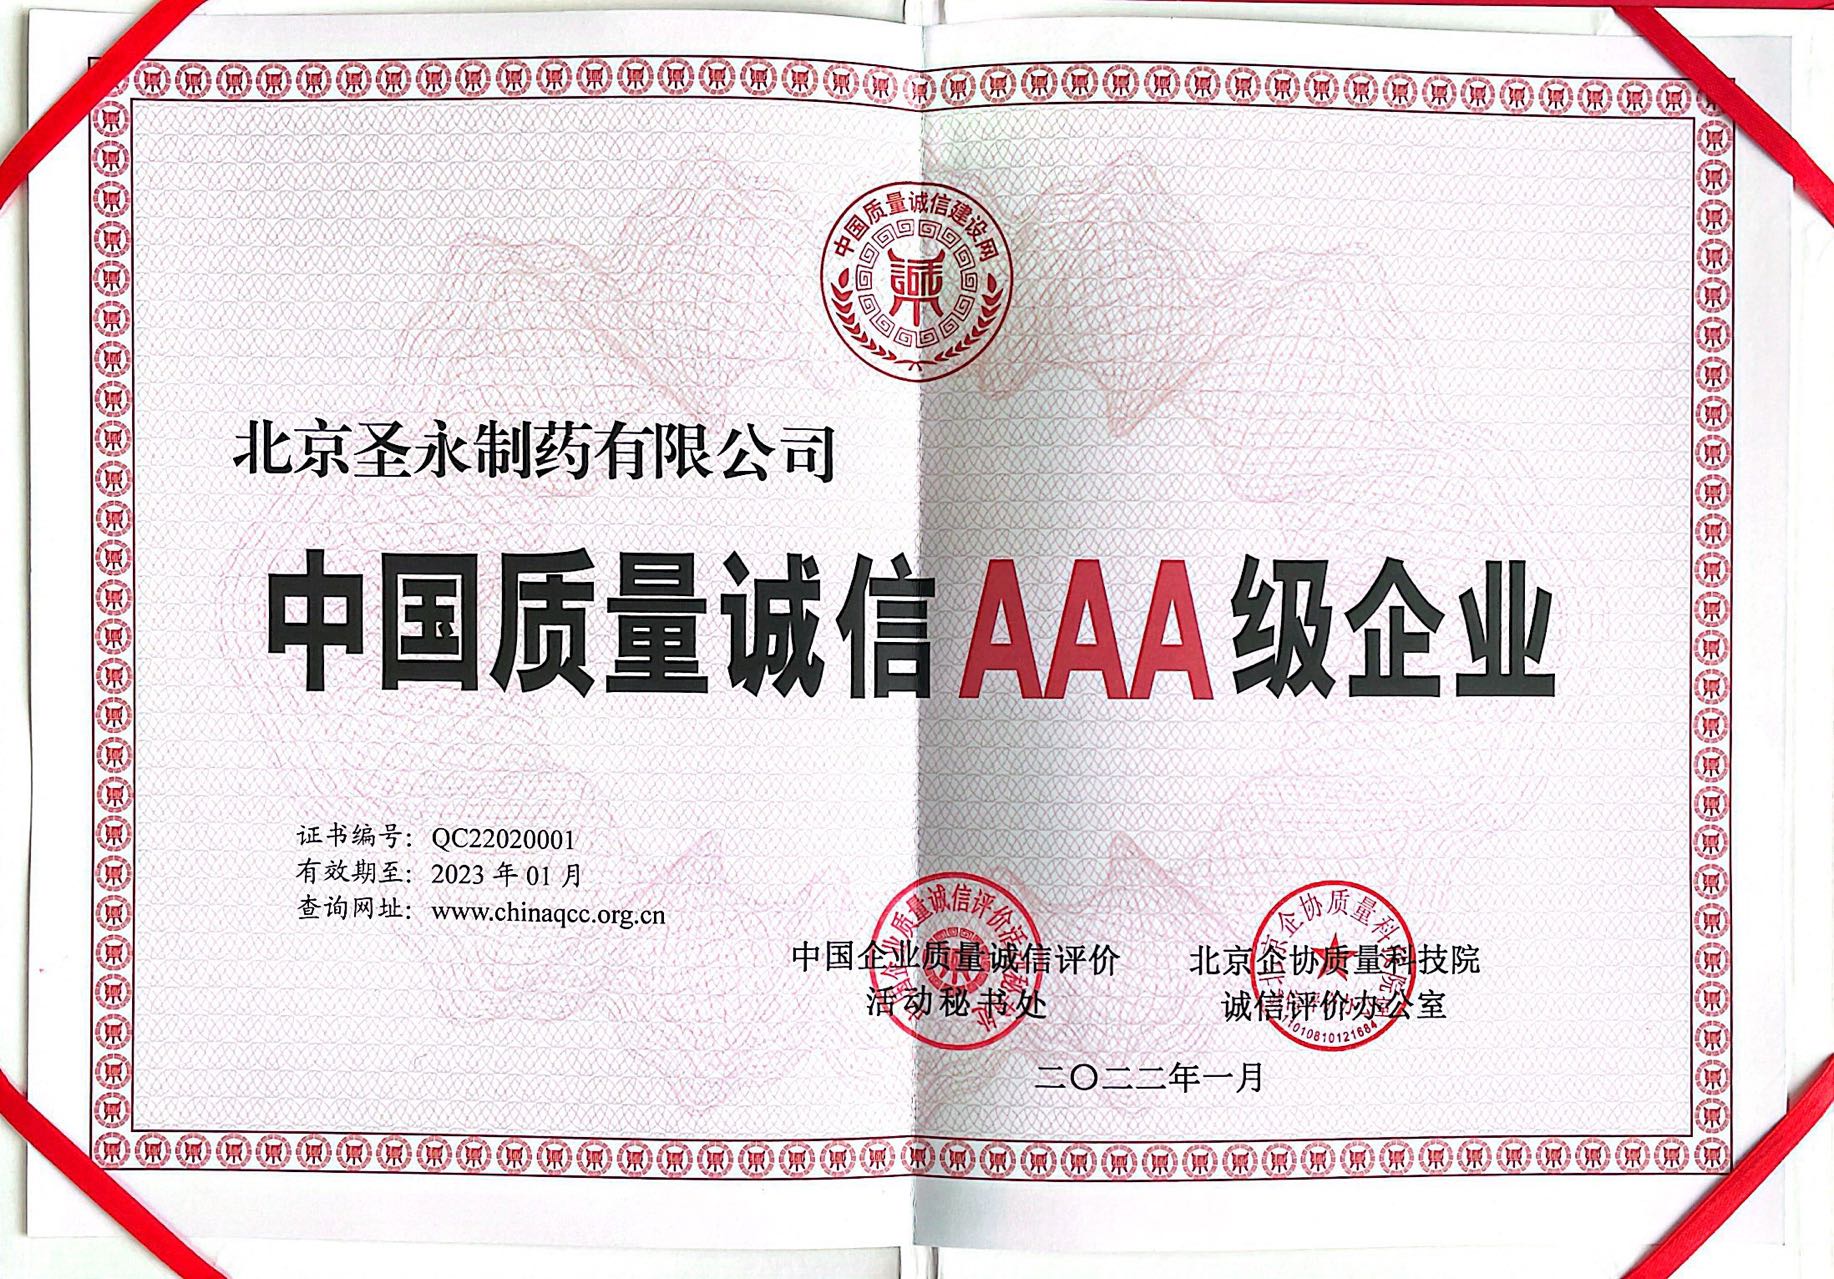 圣永荣获“中国质量诚信AAA级企业”称号